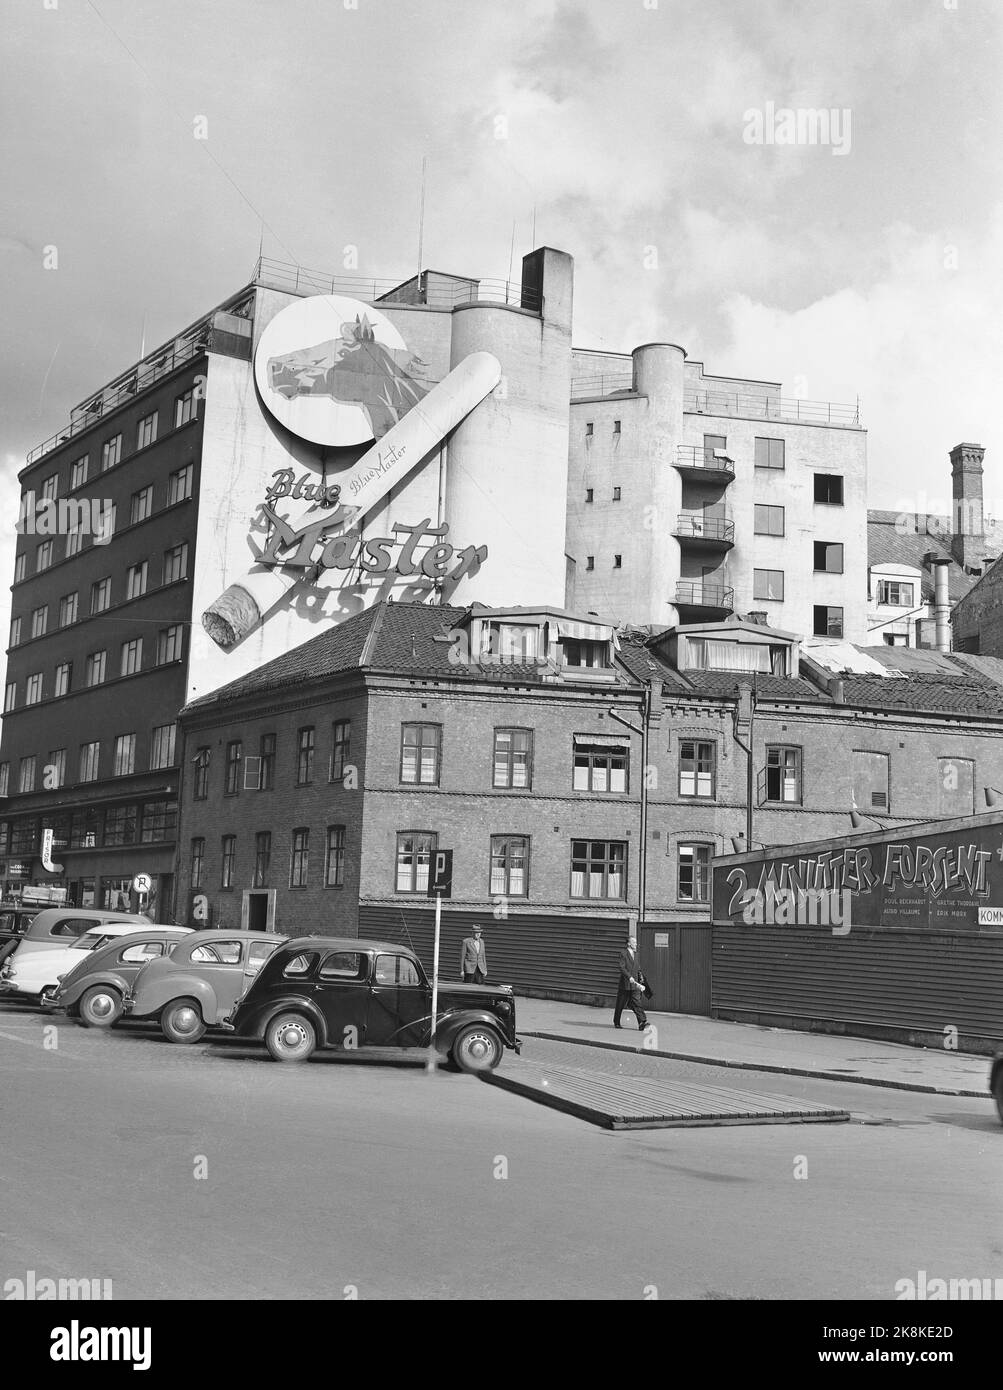 Oslo 19520902. La vecchia Broadcasting House a Roald Amundsensgate. In background la pubblicità sulla parete delle sigarette Blue Master. Auto parcheggiate, cartelli di parcheggio. Foto: Archivio NTB / NTB Foto Stock